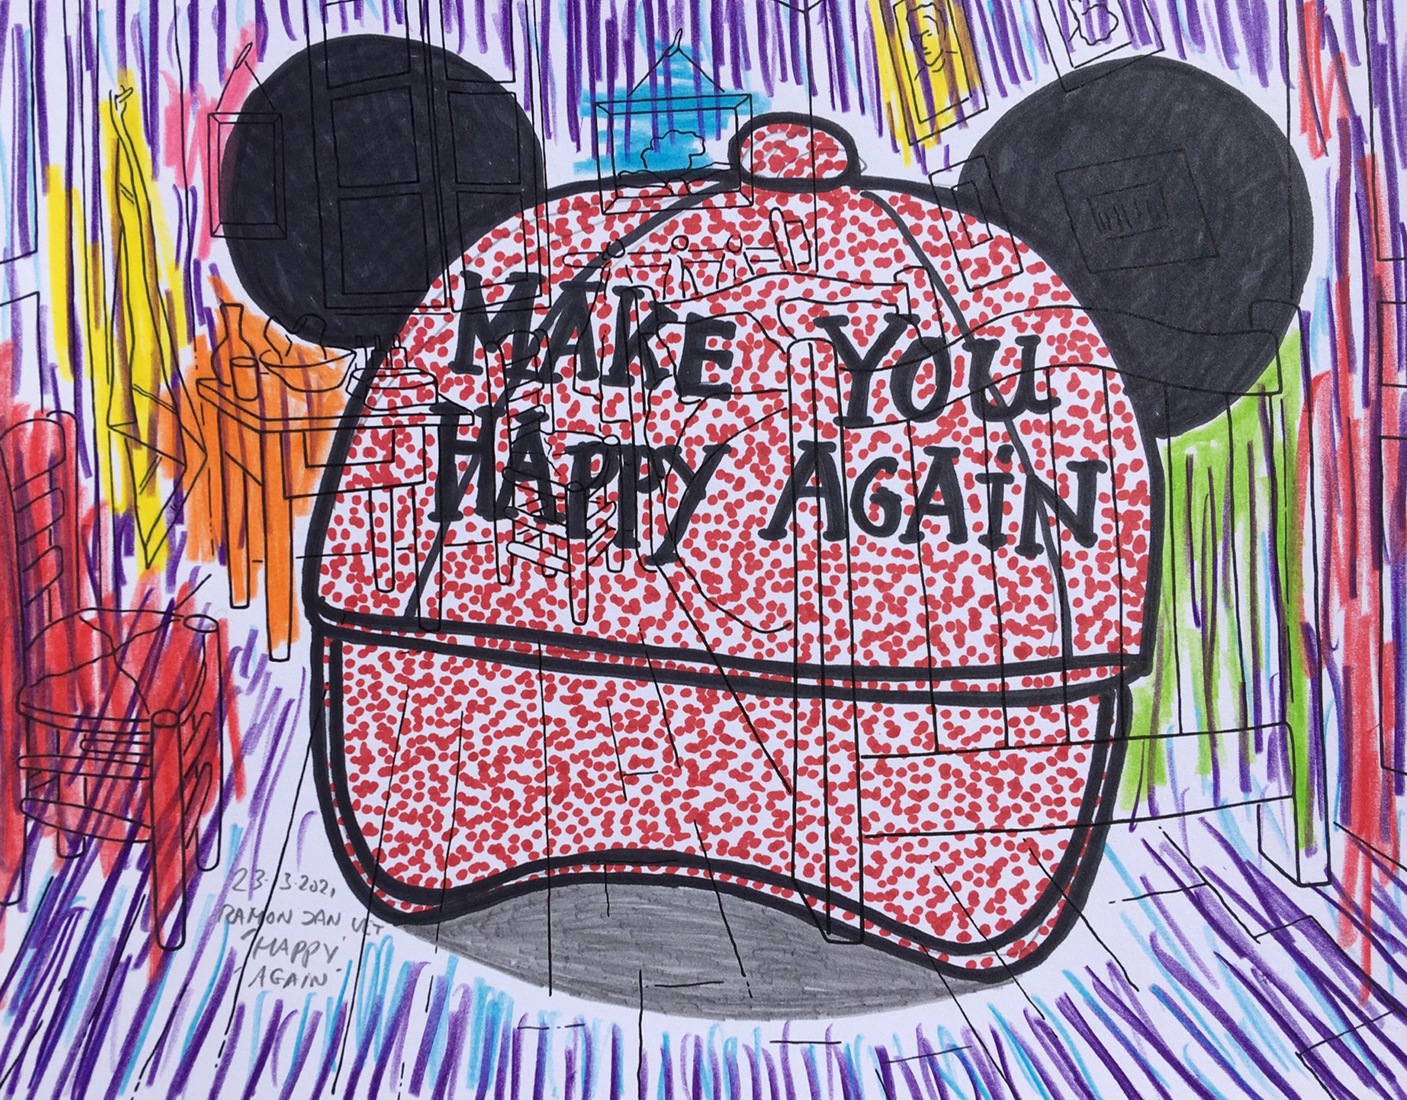 Make You Happy Again